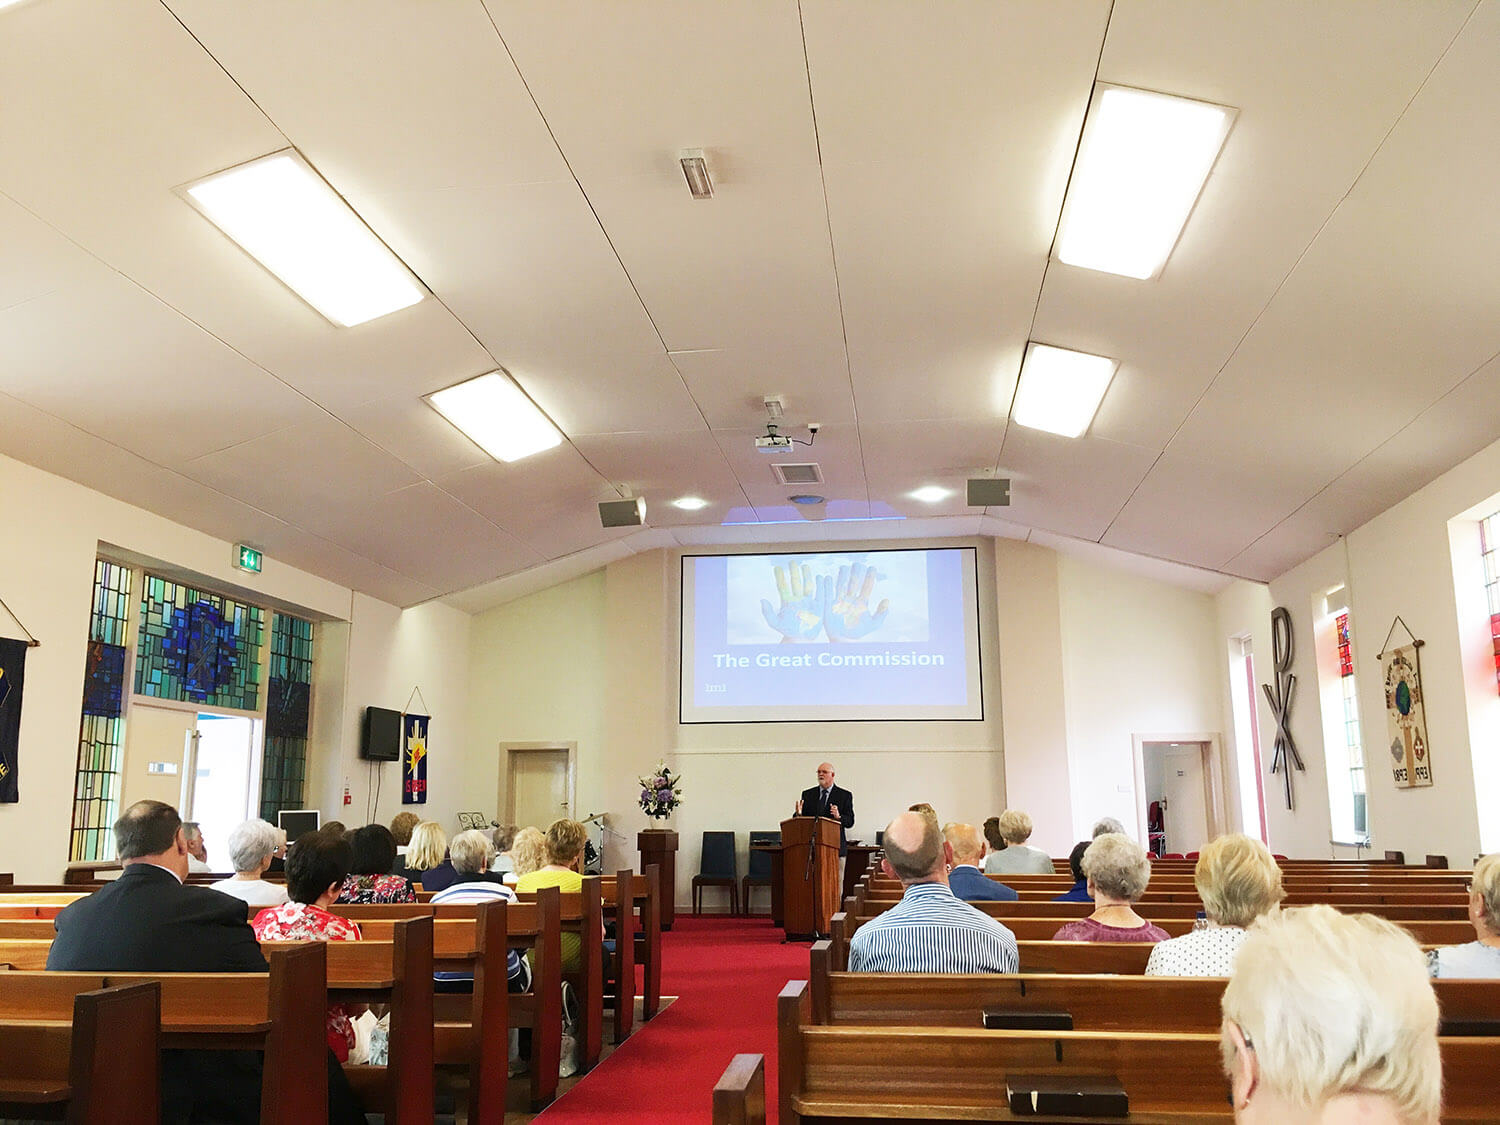 LMI at Cregagh Congregational Church